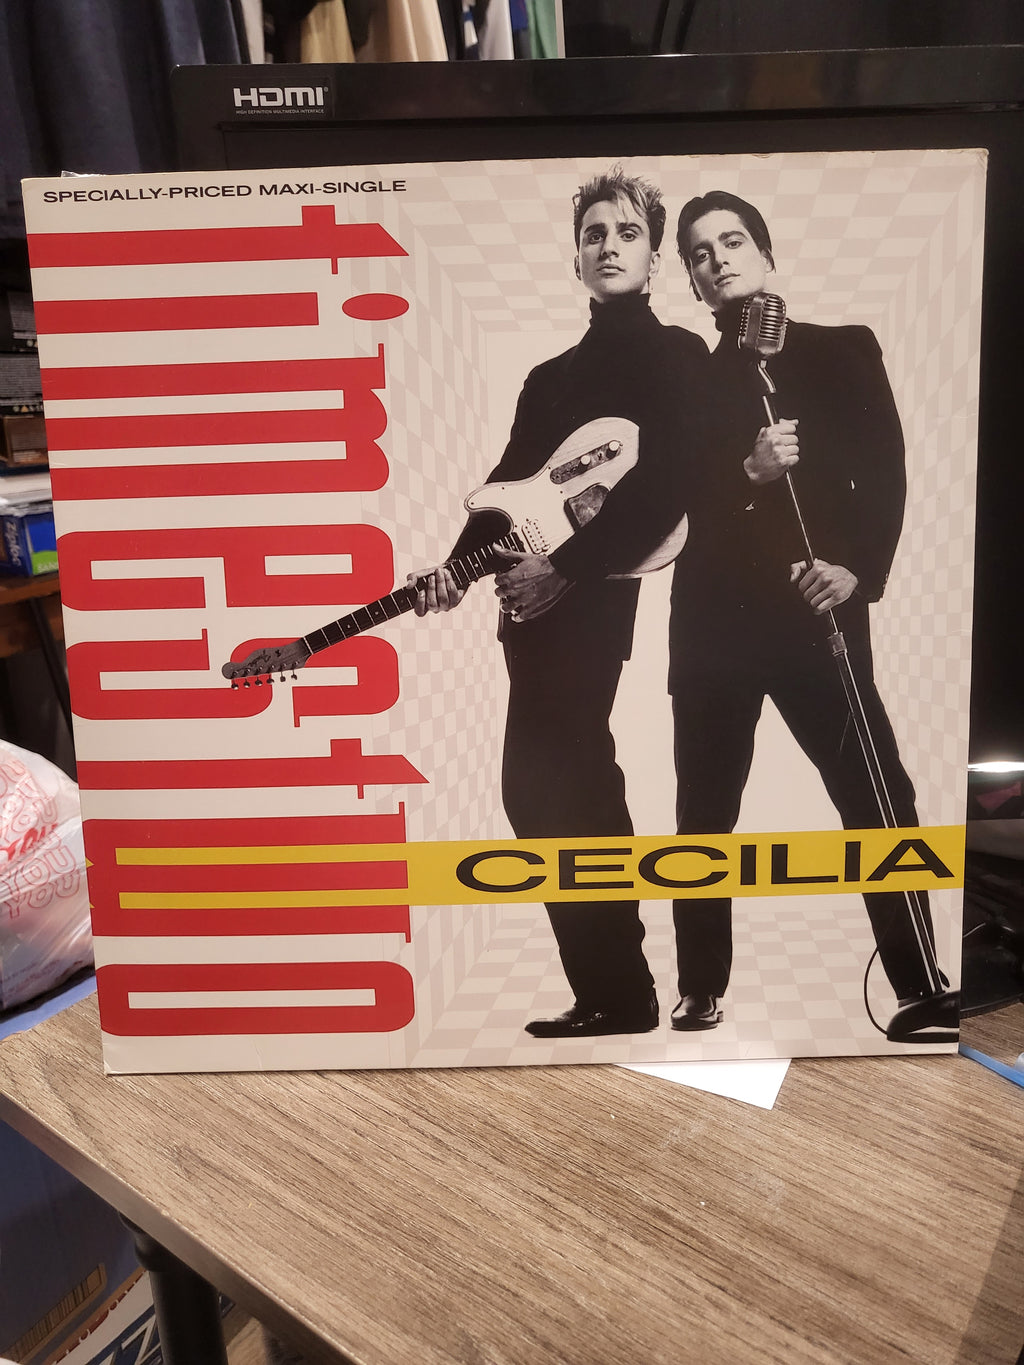 Times Two - Cecilia - Maxi-Single 12" Synth Pop Record (1988) Reprise 0-20951